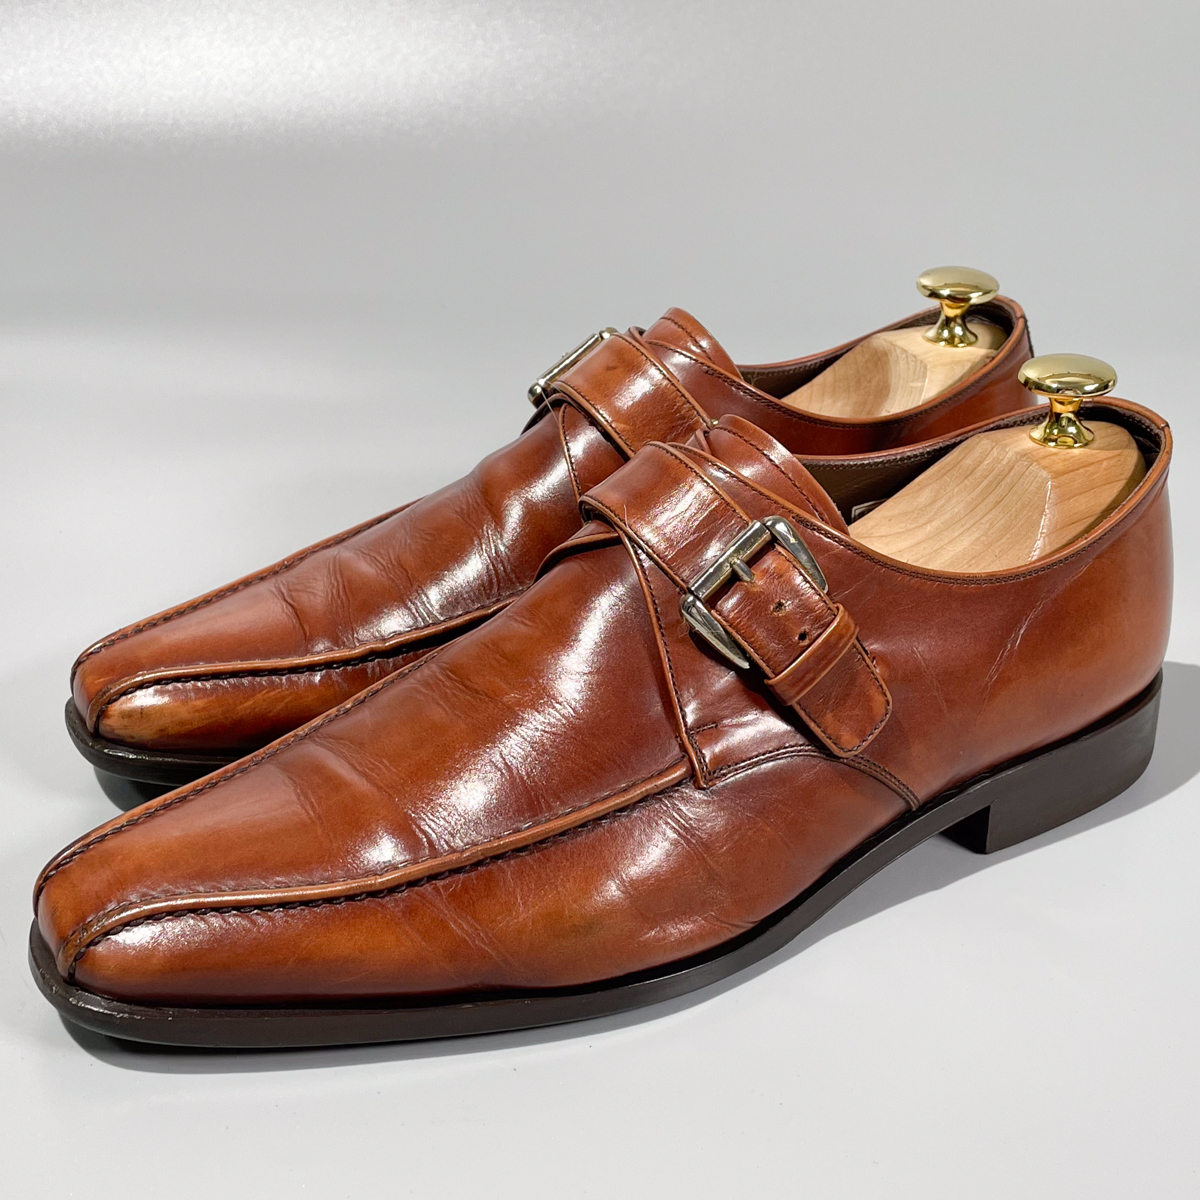 即決 REGAL リーガル モンクストラップ スワールトゥ ブラウン 茶色 メンズ 本革 レザー 革靴 25cm ビジネスシューズ 紳士靴 A1907_画像1